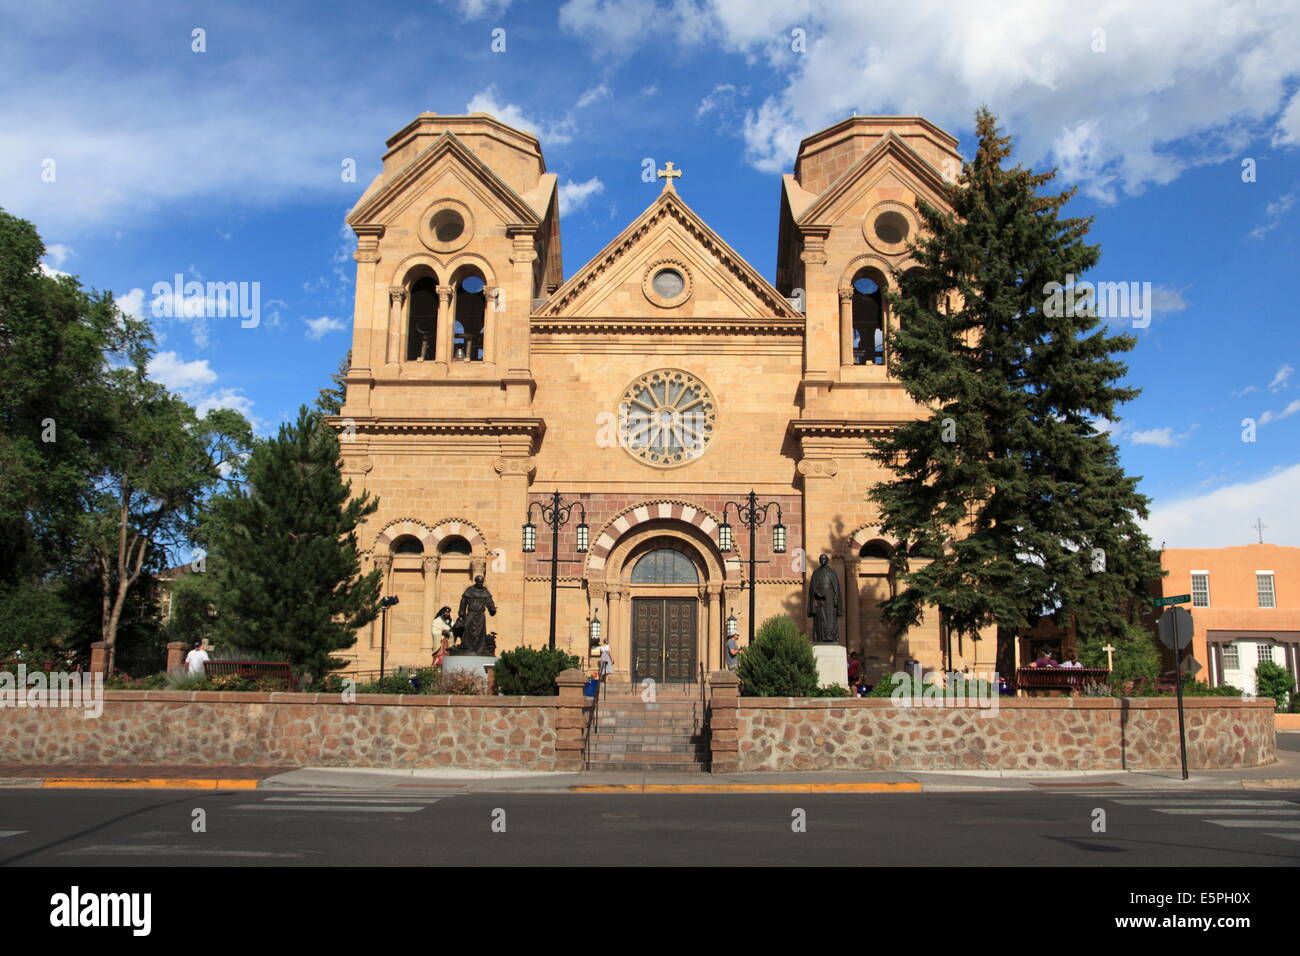 St.-Francis-Dom (Basilika des Heiligen Franziskus von Assisi), Santa Fe, New Mexico, Vereinigte Staaten von Amerika, Nordamerika Stockfoto